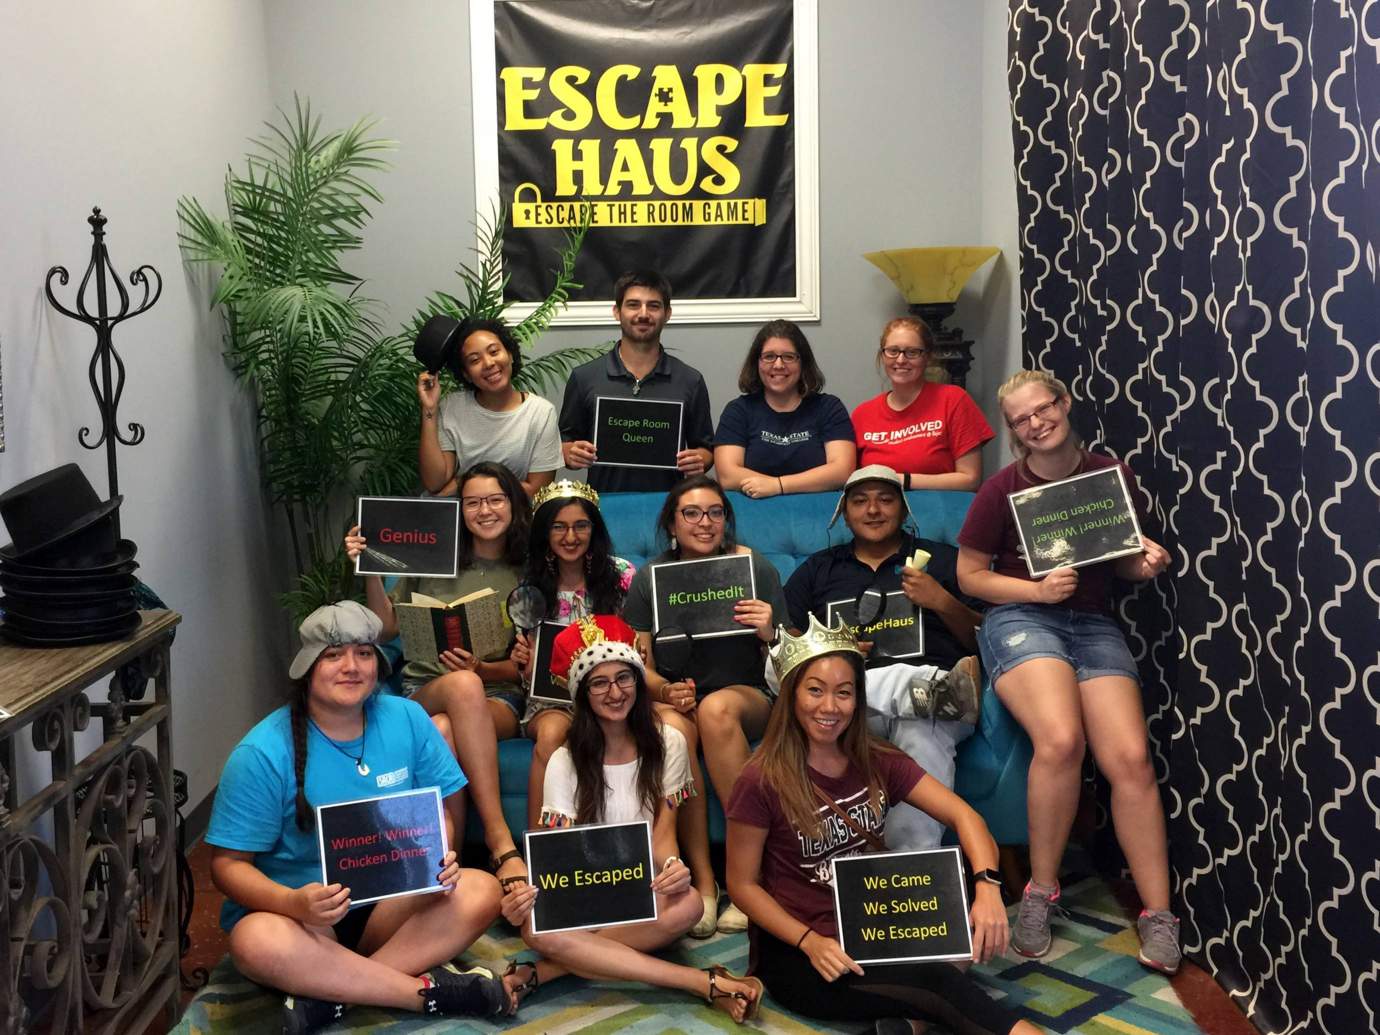 Executive board escapes at the Escape Haus